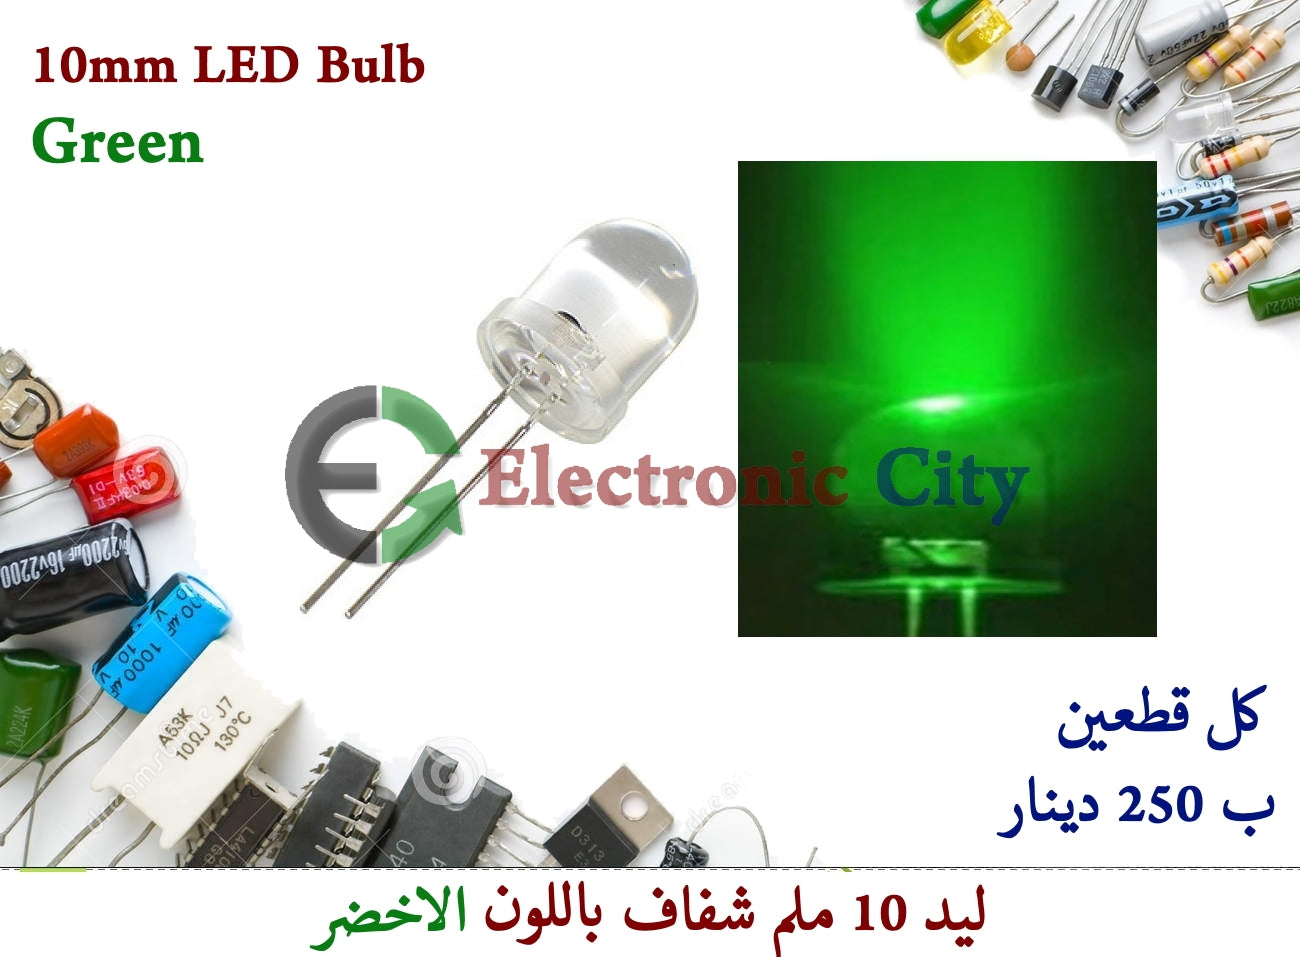 10mm LED Bulb Green